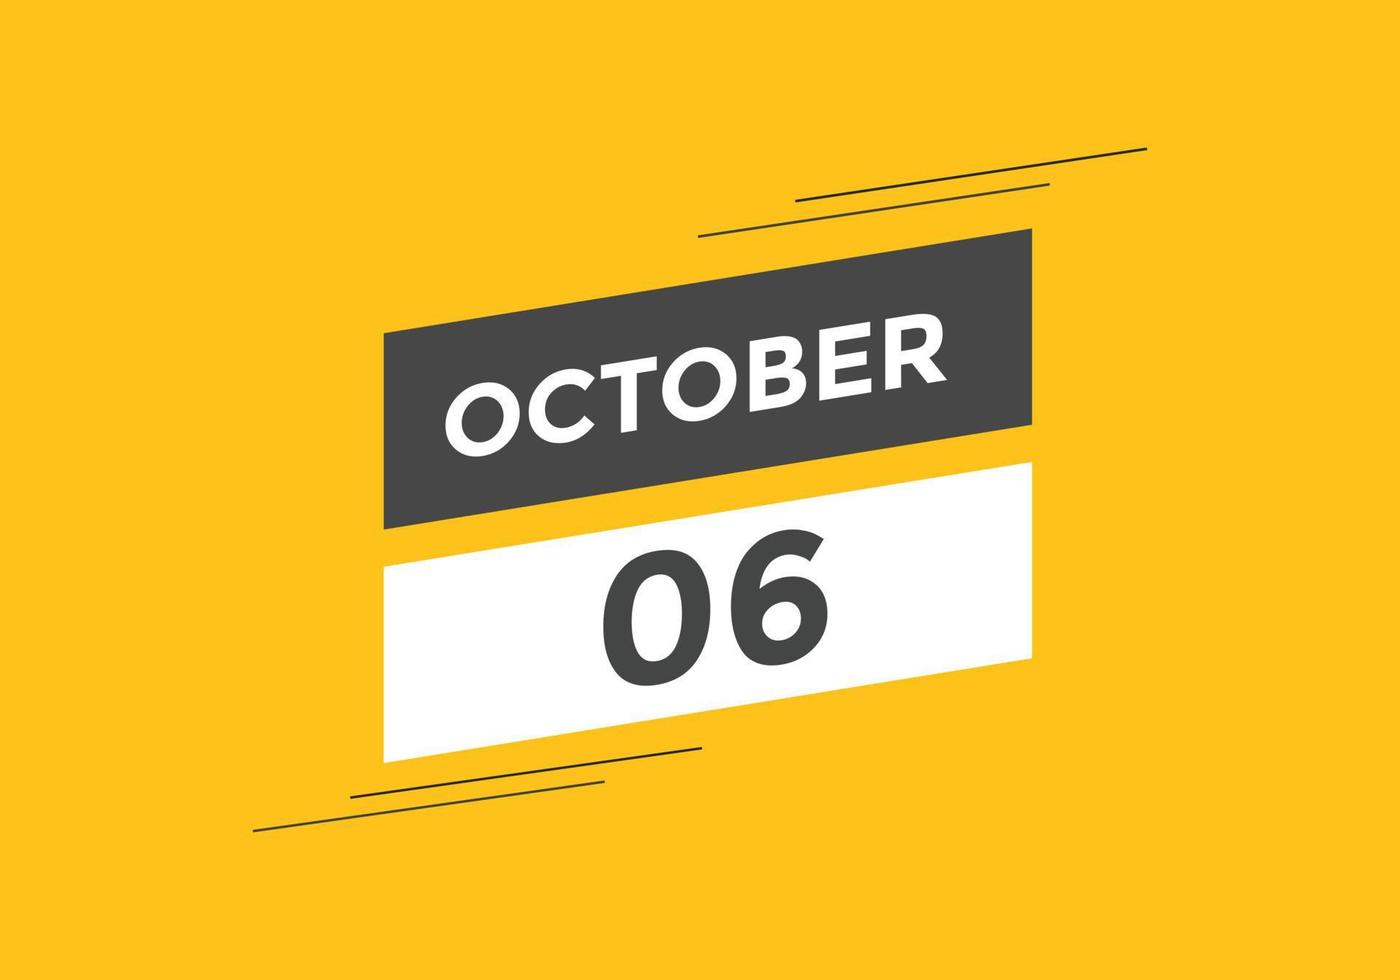 ottobre 6 calendario promemoria. 6 ° ottobre quotidiano calendario icona modello. calendario 6 ° ottobre icona design modello. vettore illustrazione